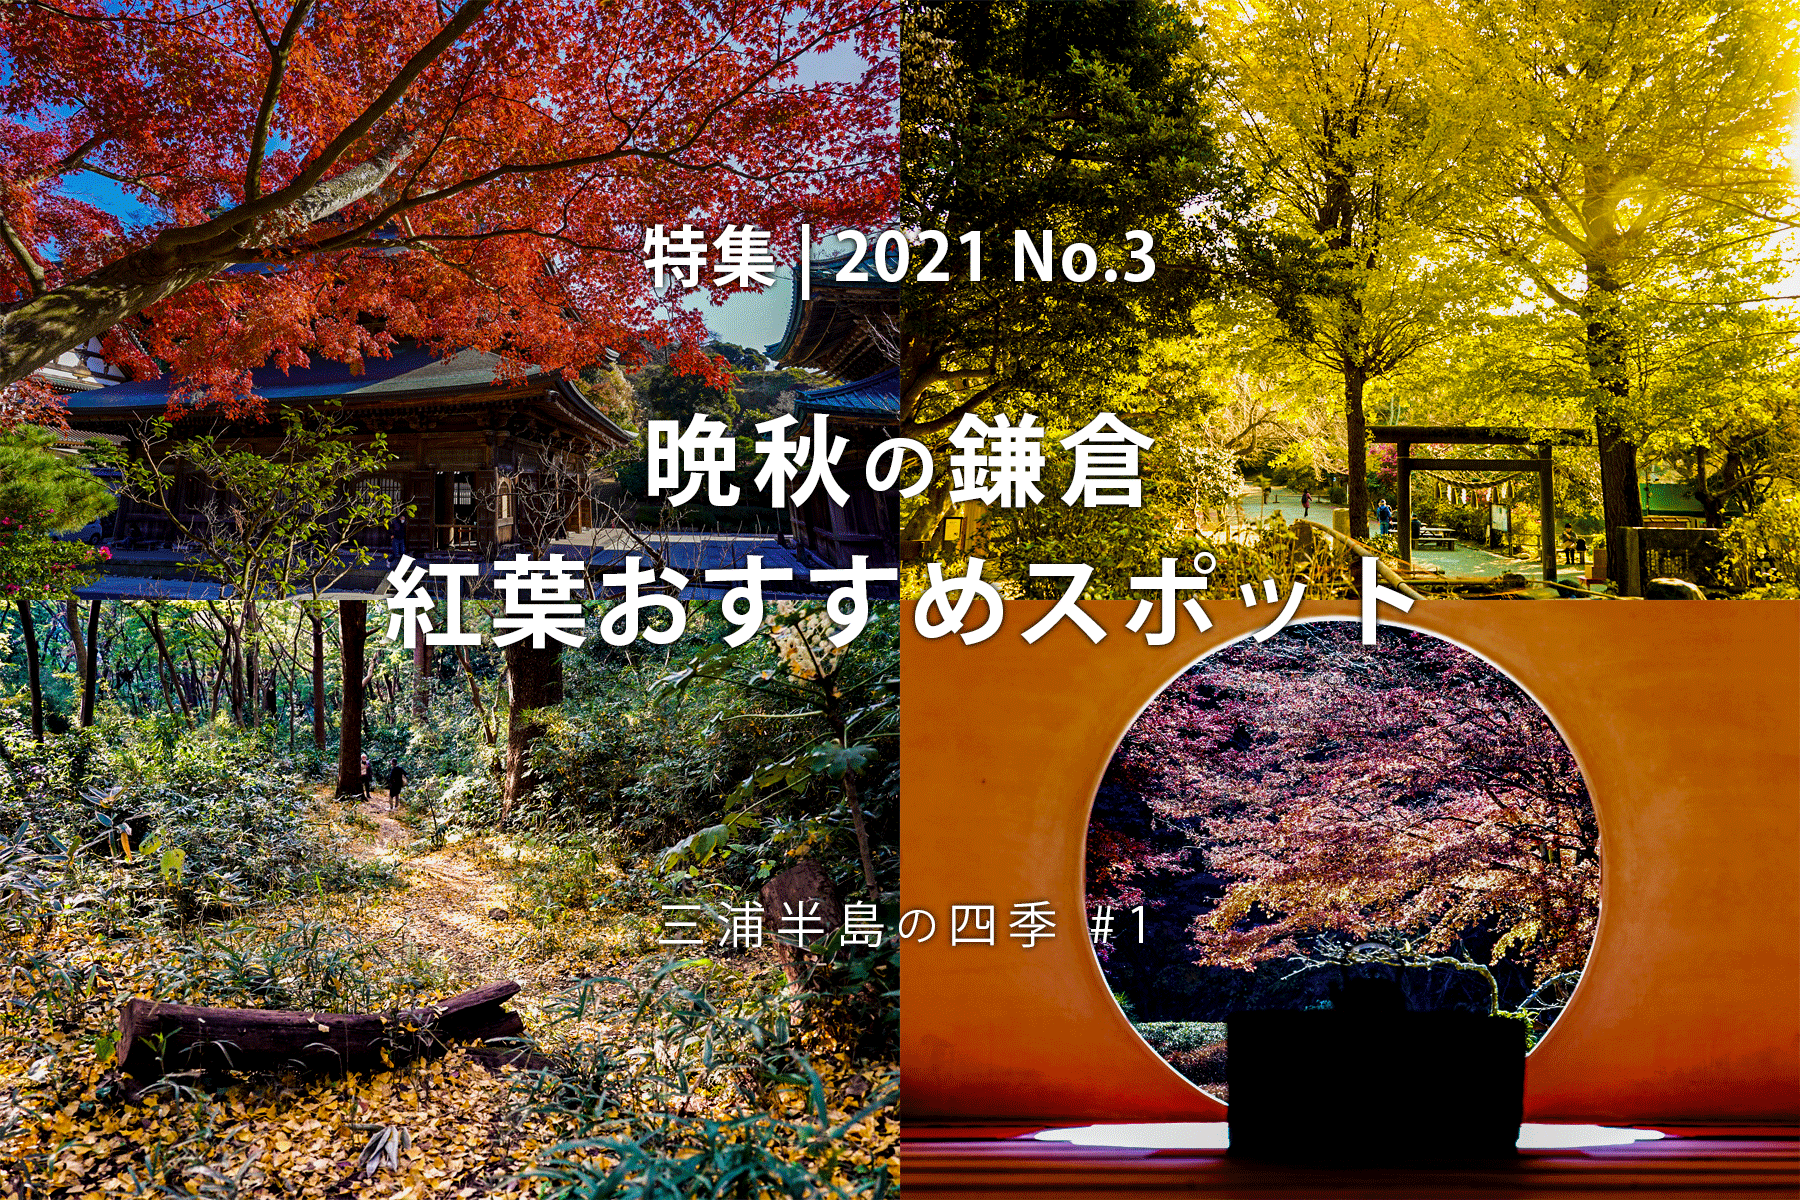 【2021 No.3】特集 | 晩秋の鎌倉・紅葉おすすめスポット